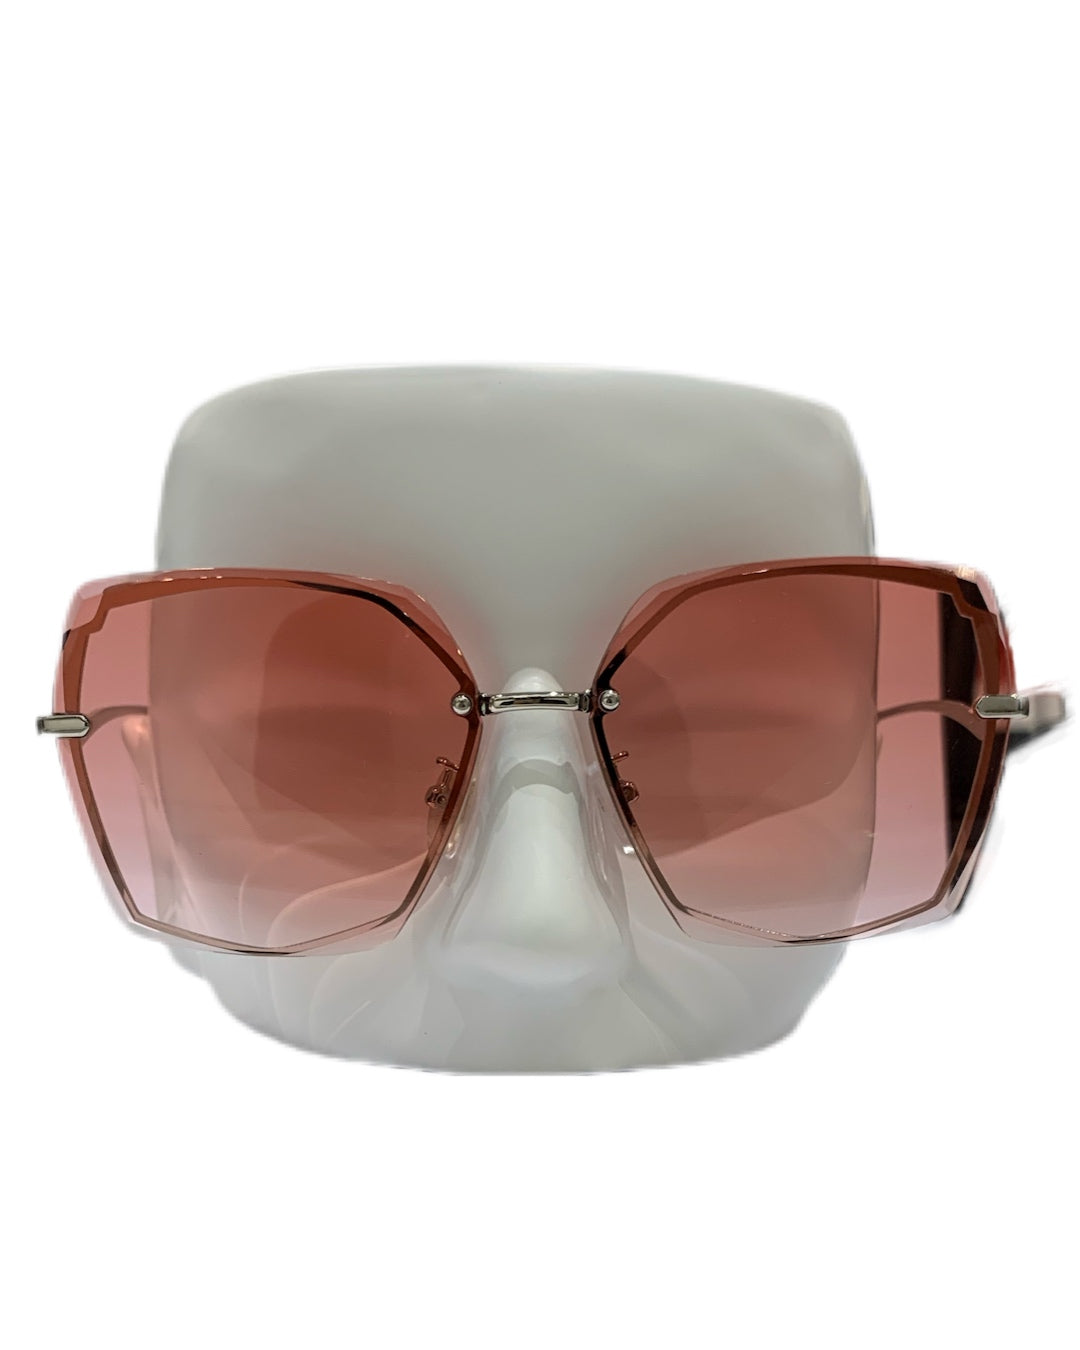 3NY - SOV Sunglasses